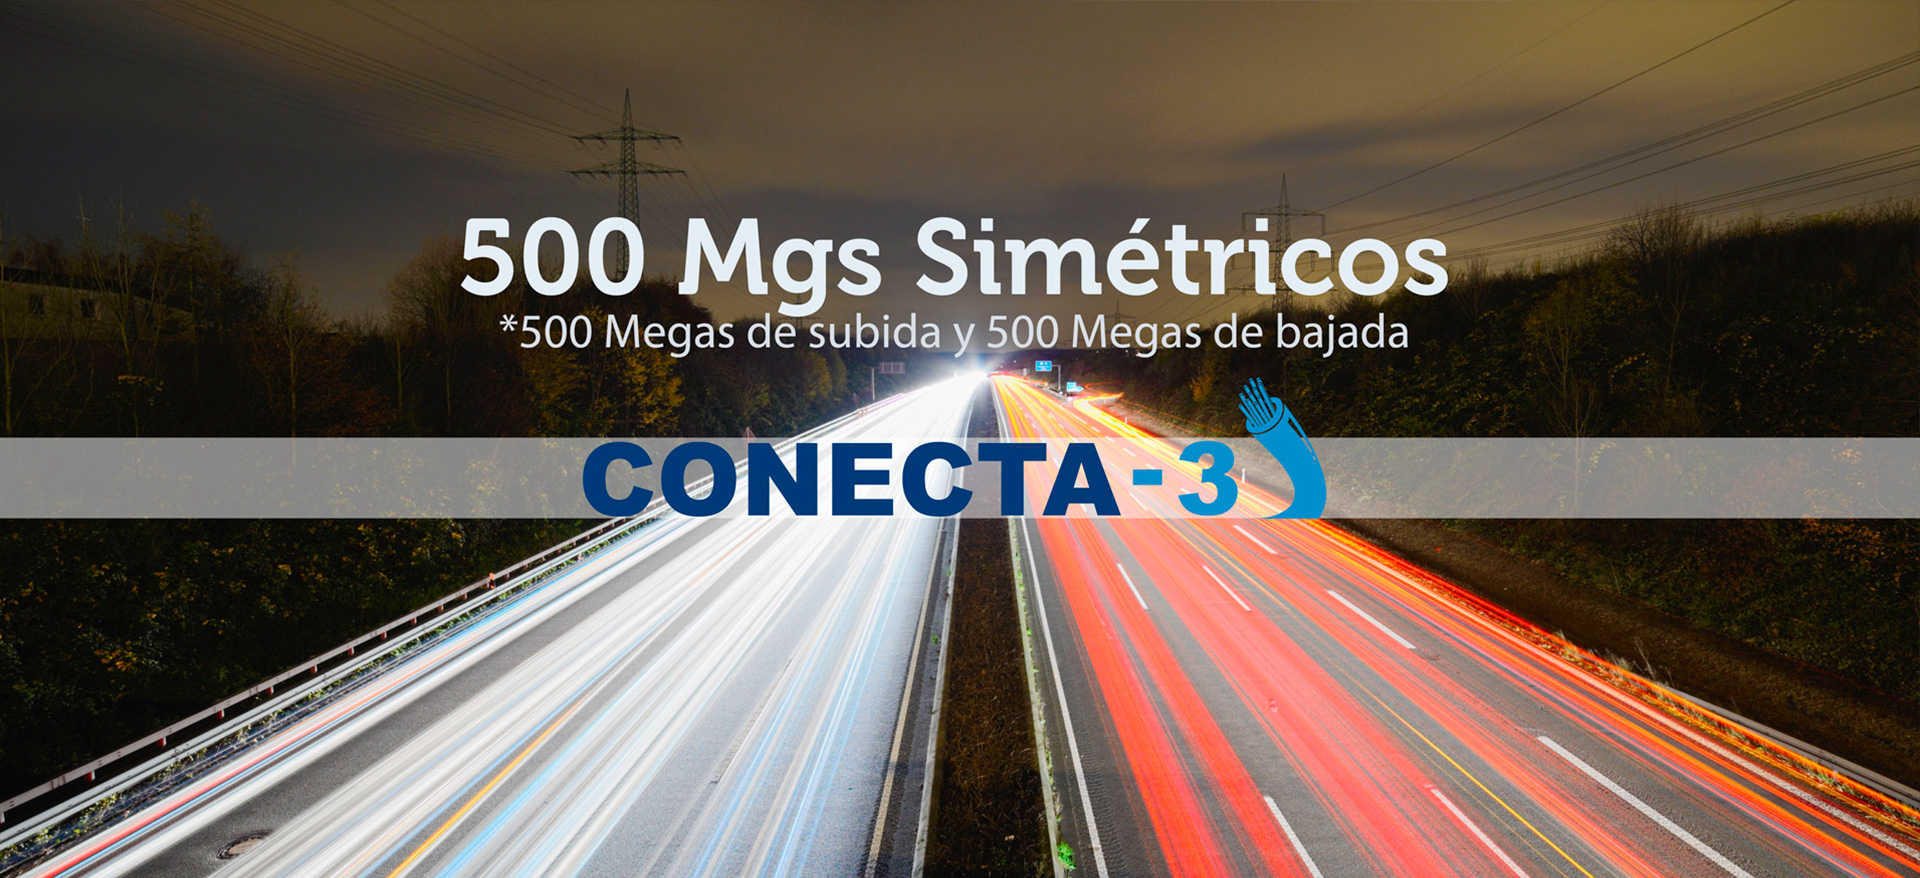 (c) Conecta-3.es